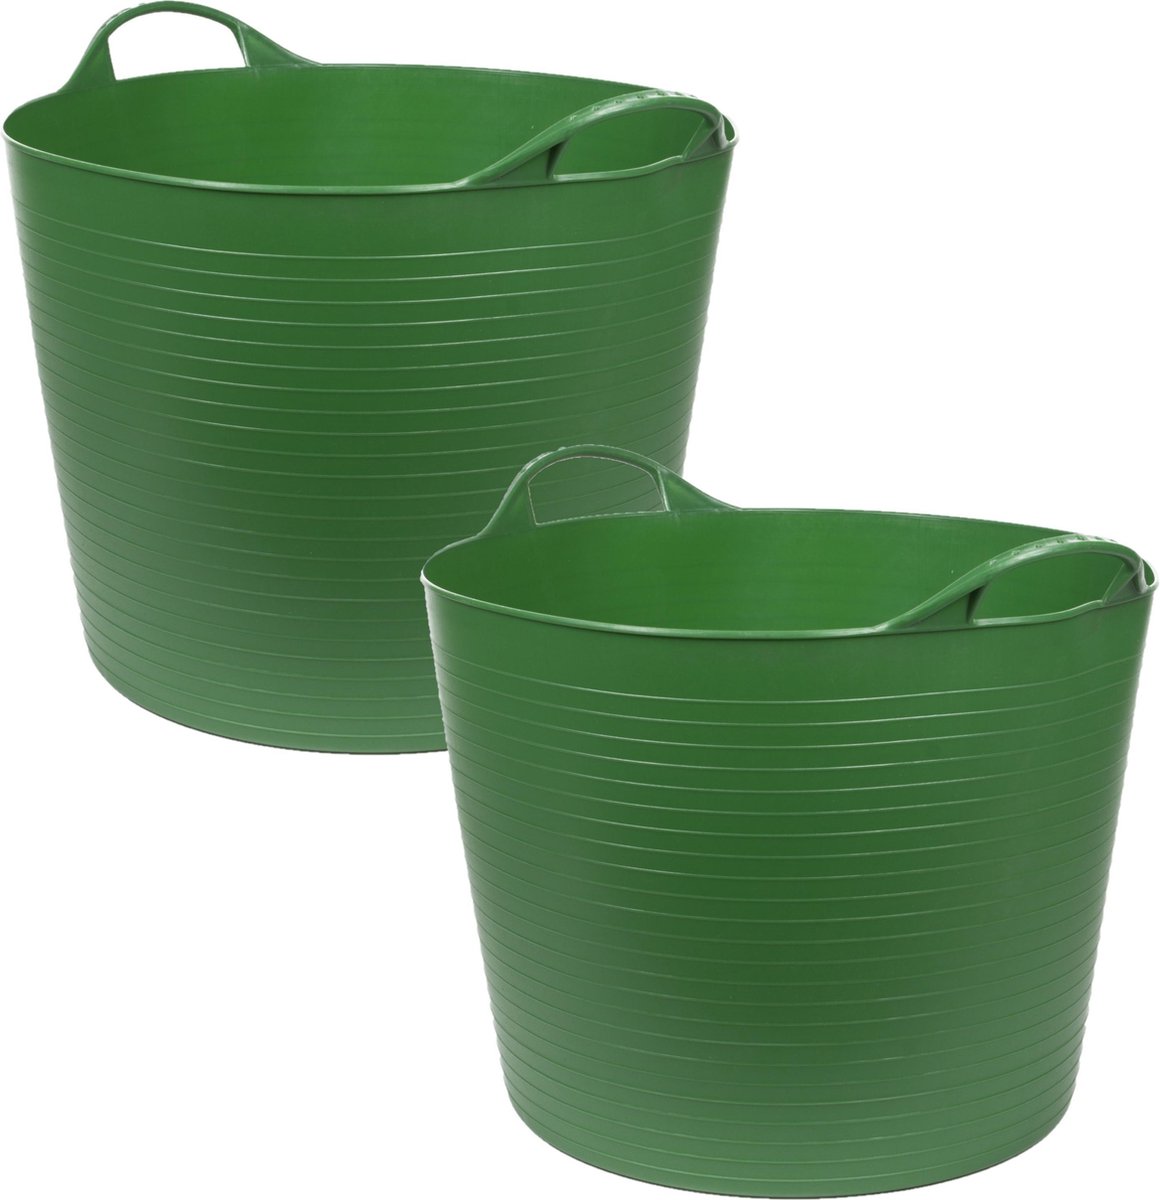 3x stuks flexibele kuip emmer/wasmand rond groen 45 liter - Opbergmanden - 37 x 45 cm